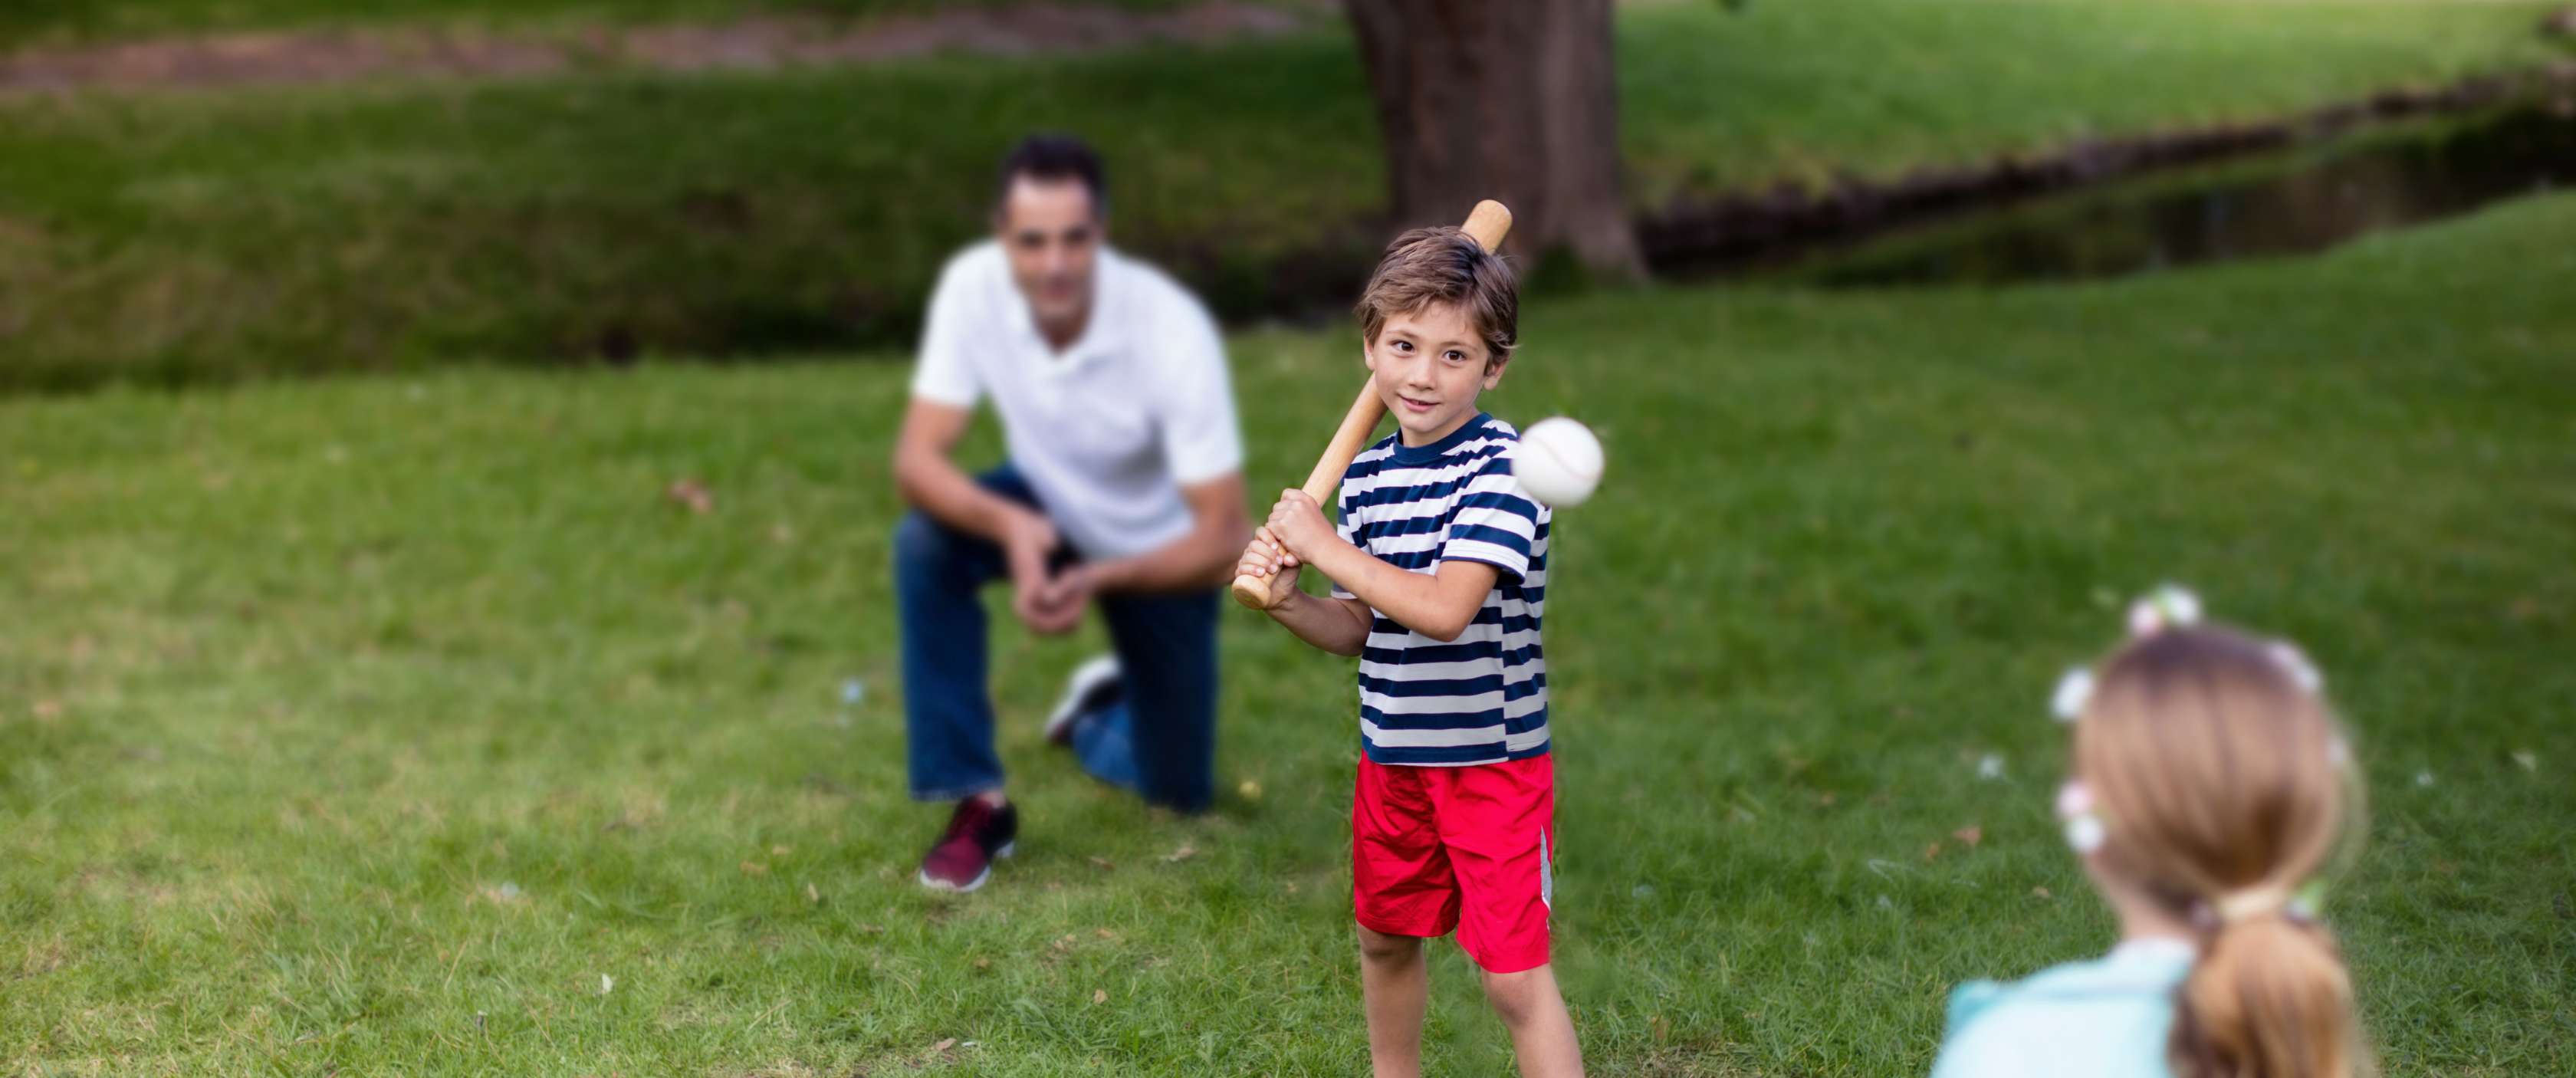 Kleiner Junge schlägt nach einem fliegenden Baseball, während der Vater als Fänger hinter ihm kniet